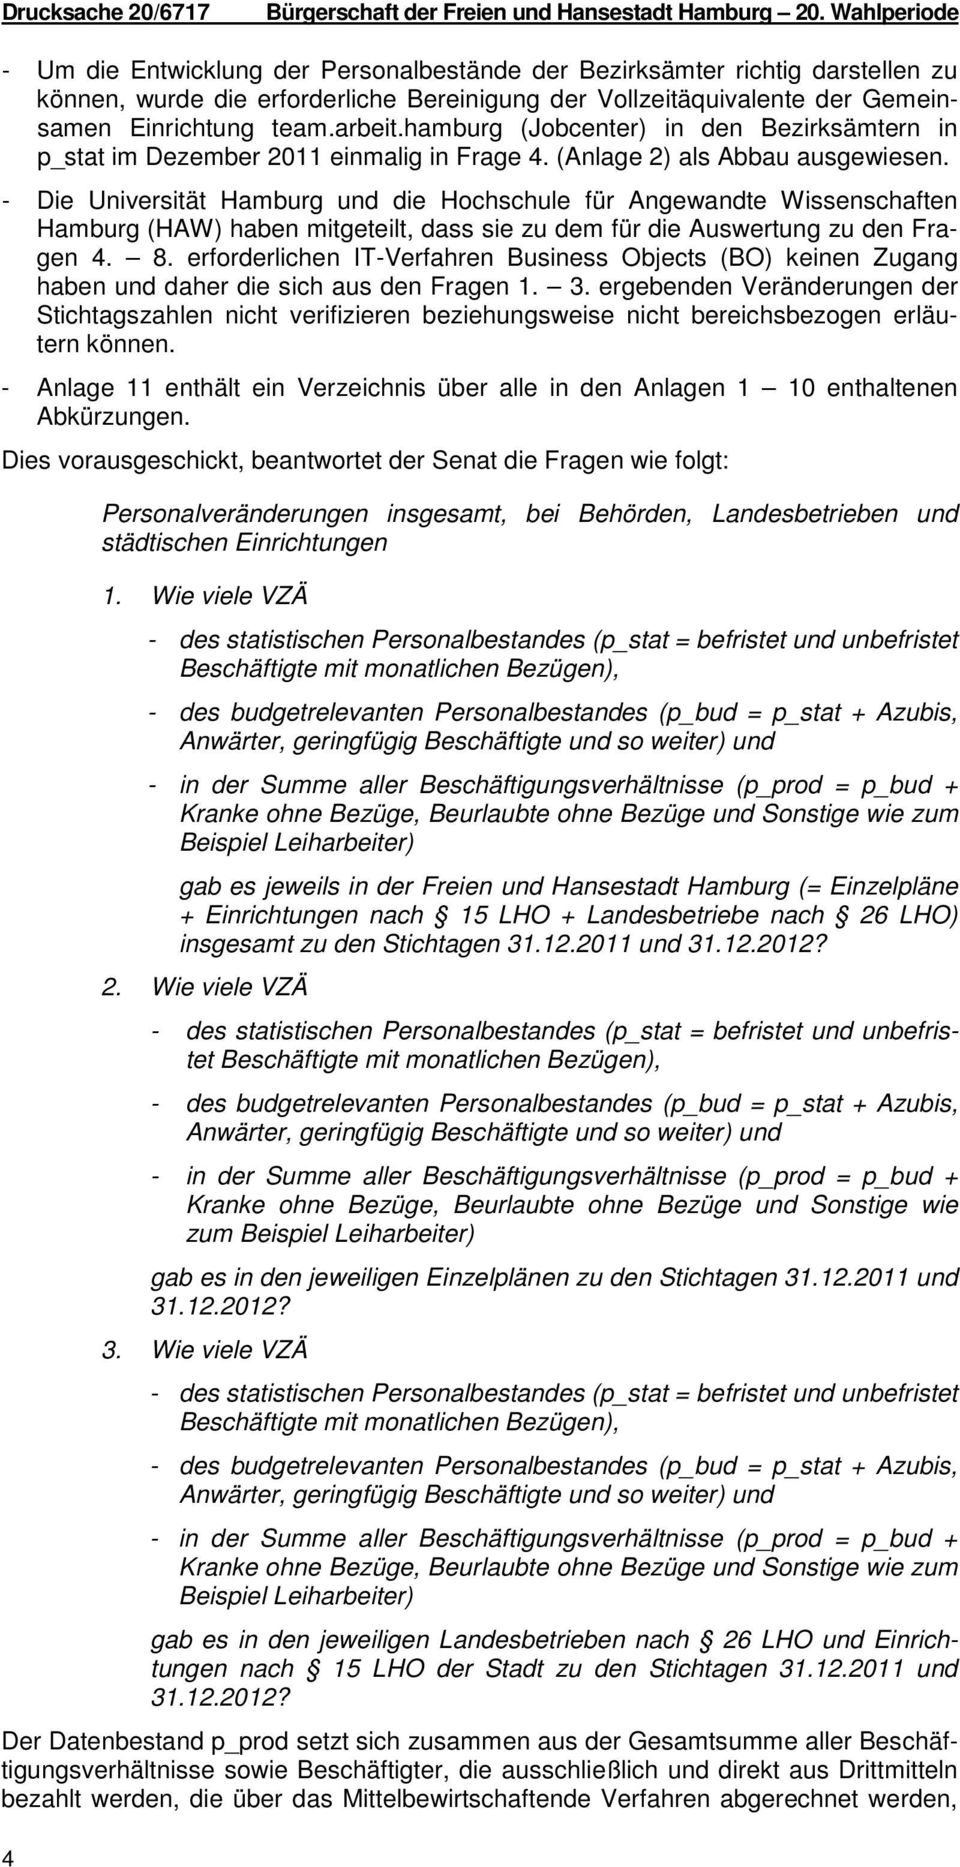 hamburg (Jobcenter) in den Bezirksämtern in p_stat im Dezember 2011 einmalig in Frage 4. (Anlage 2) als ausgewiesen.